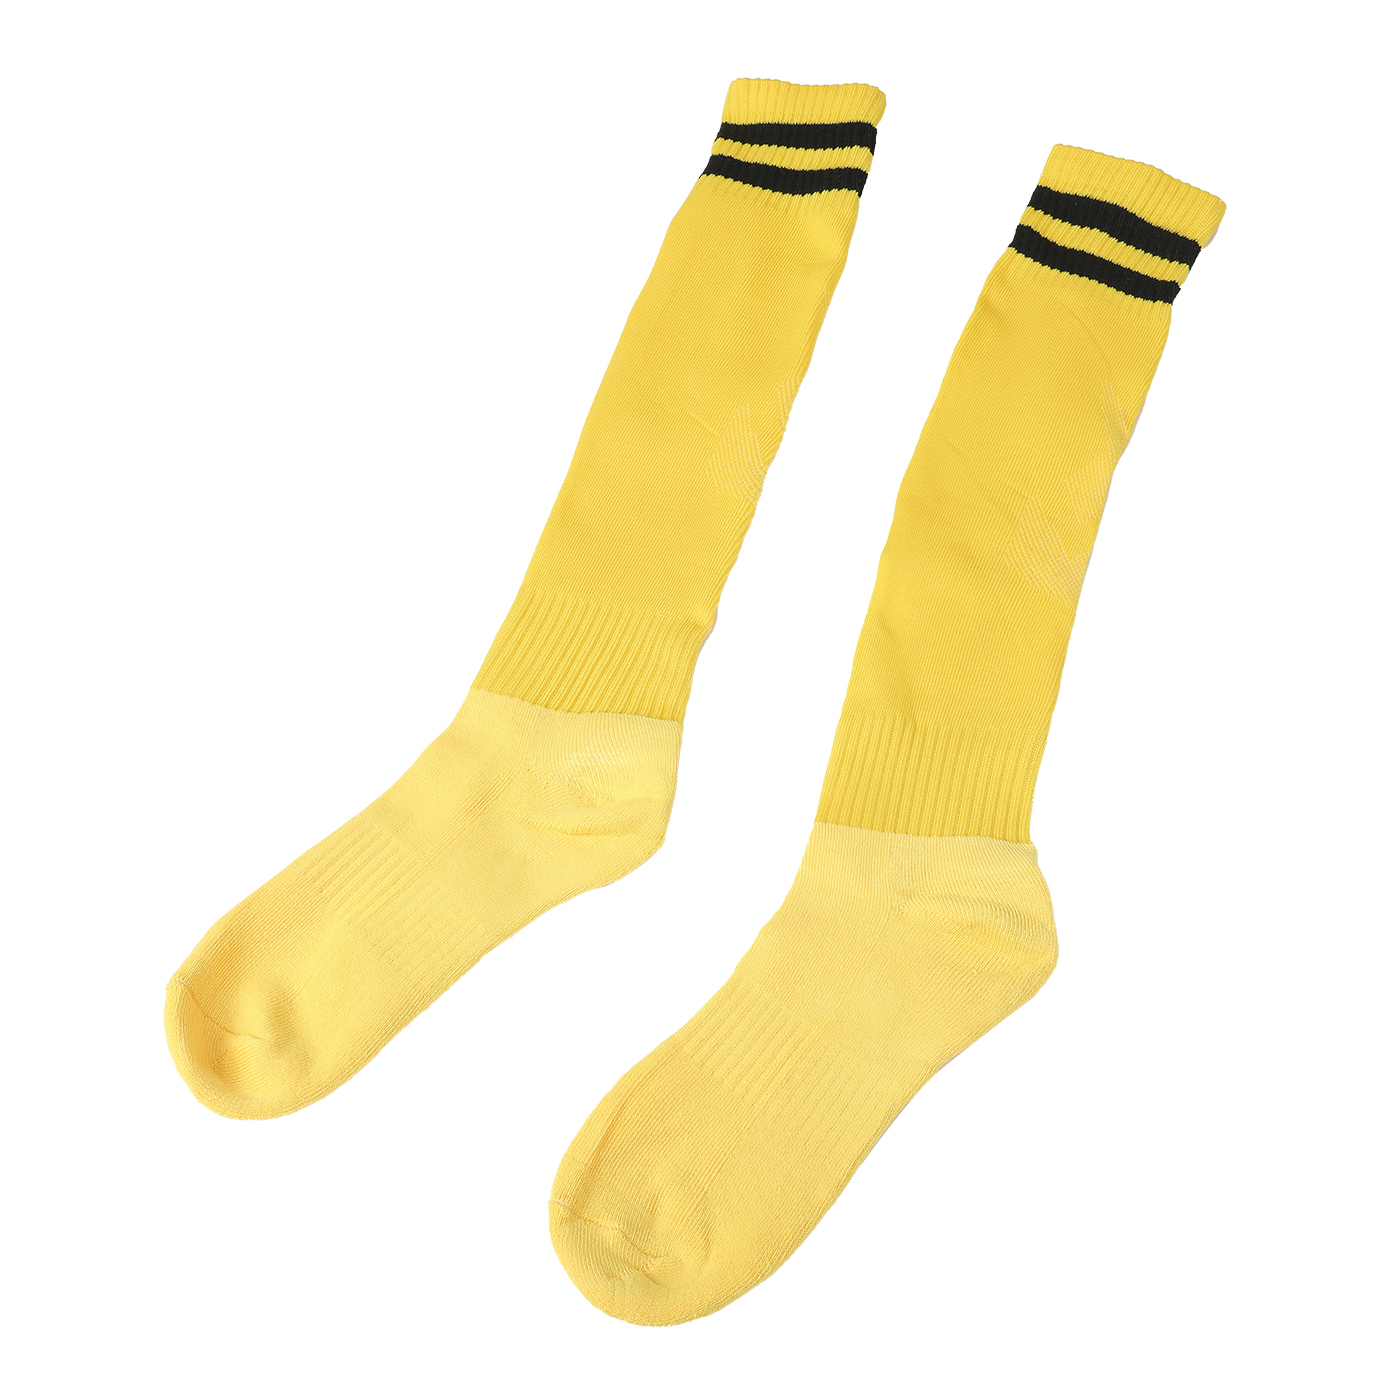 Colored Knee High Soccer Socks